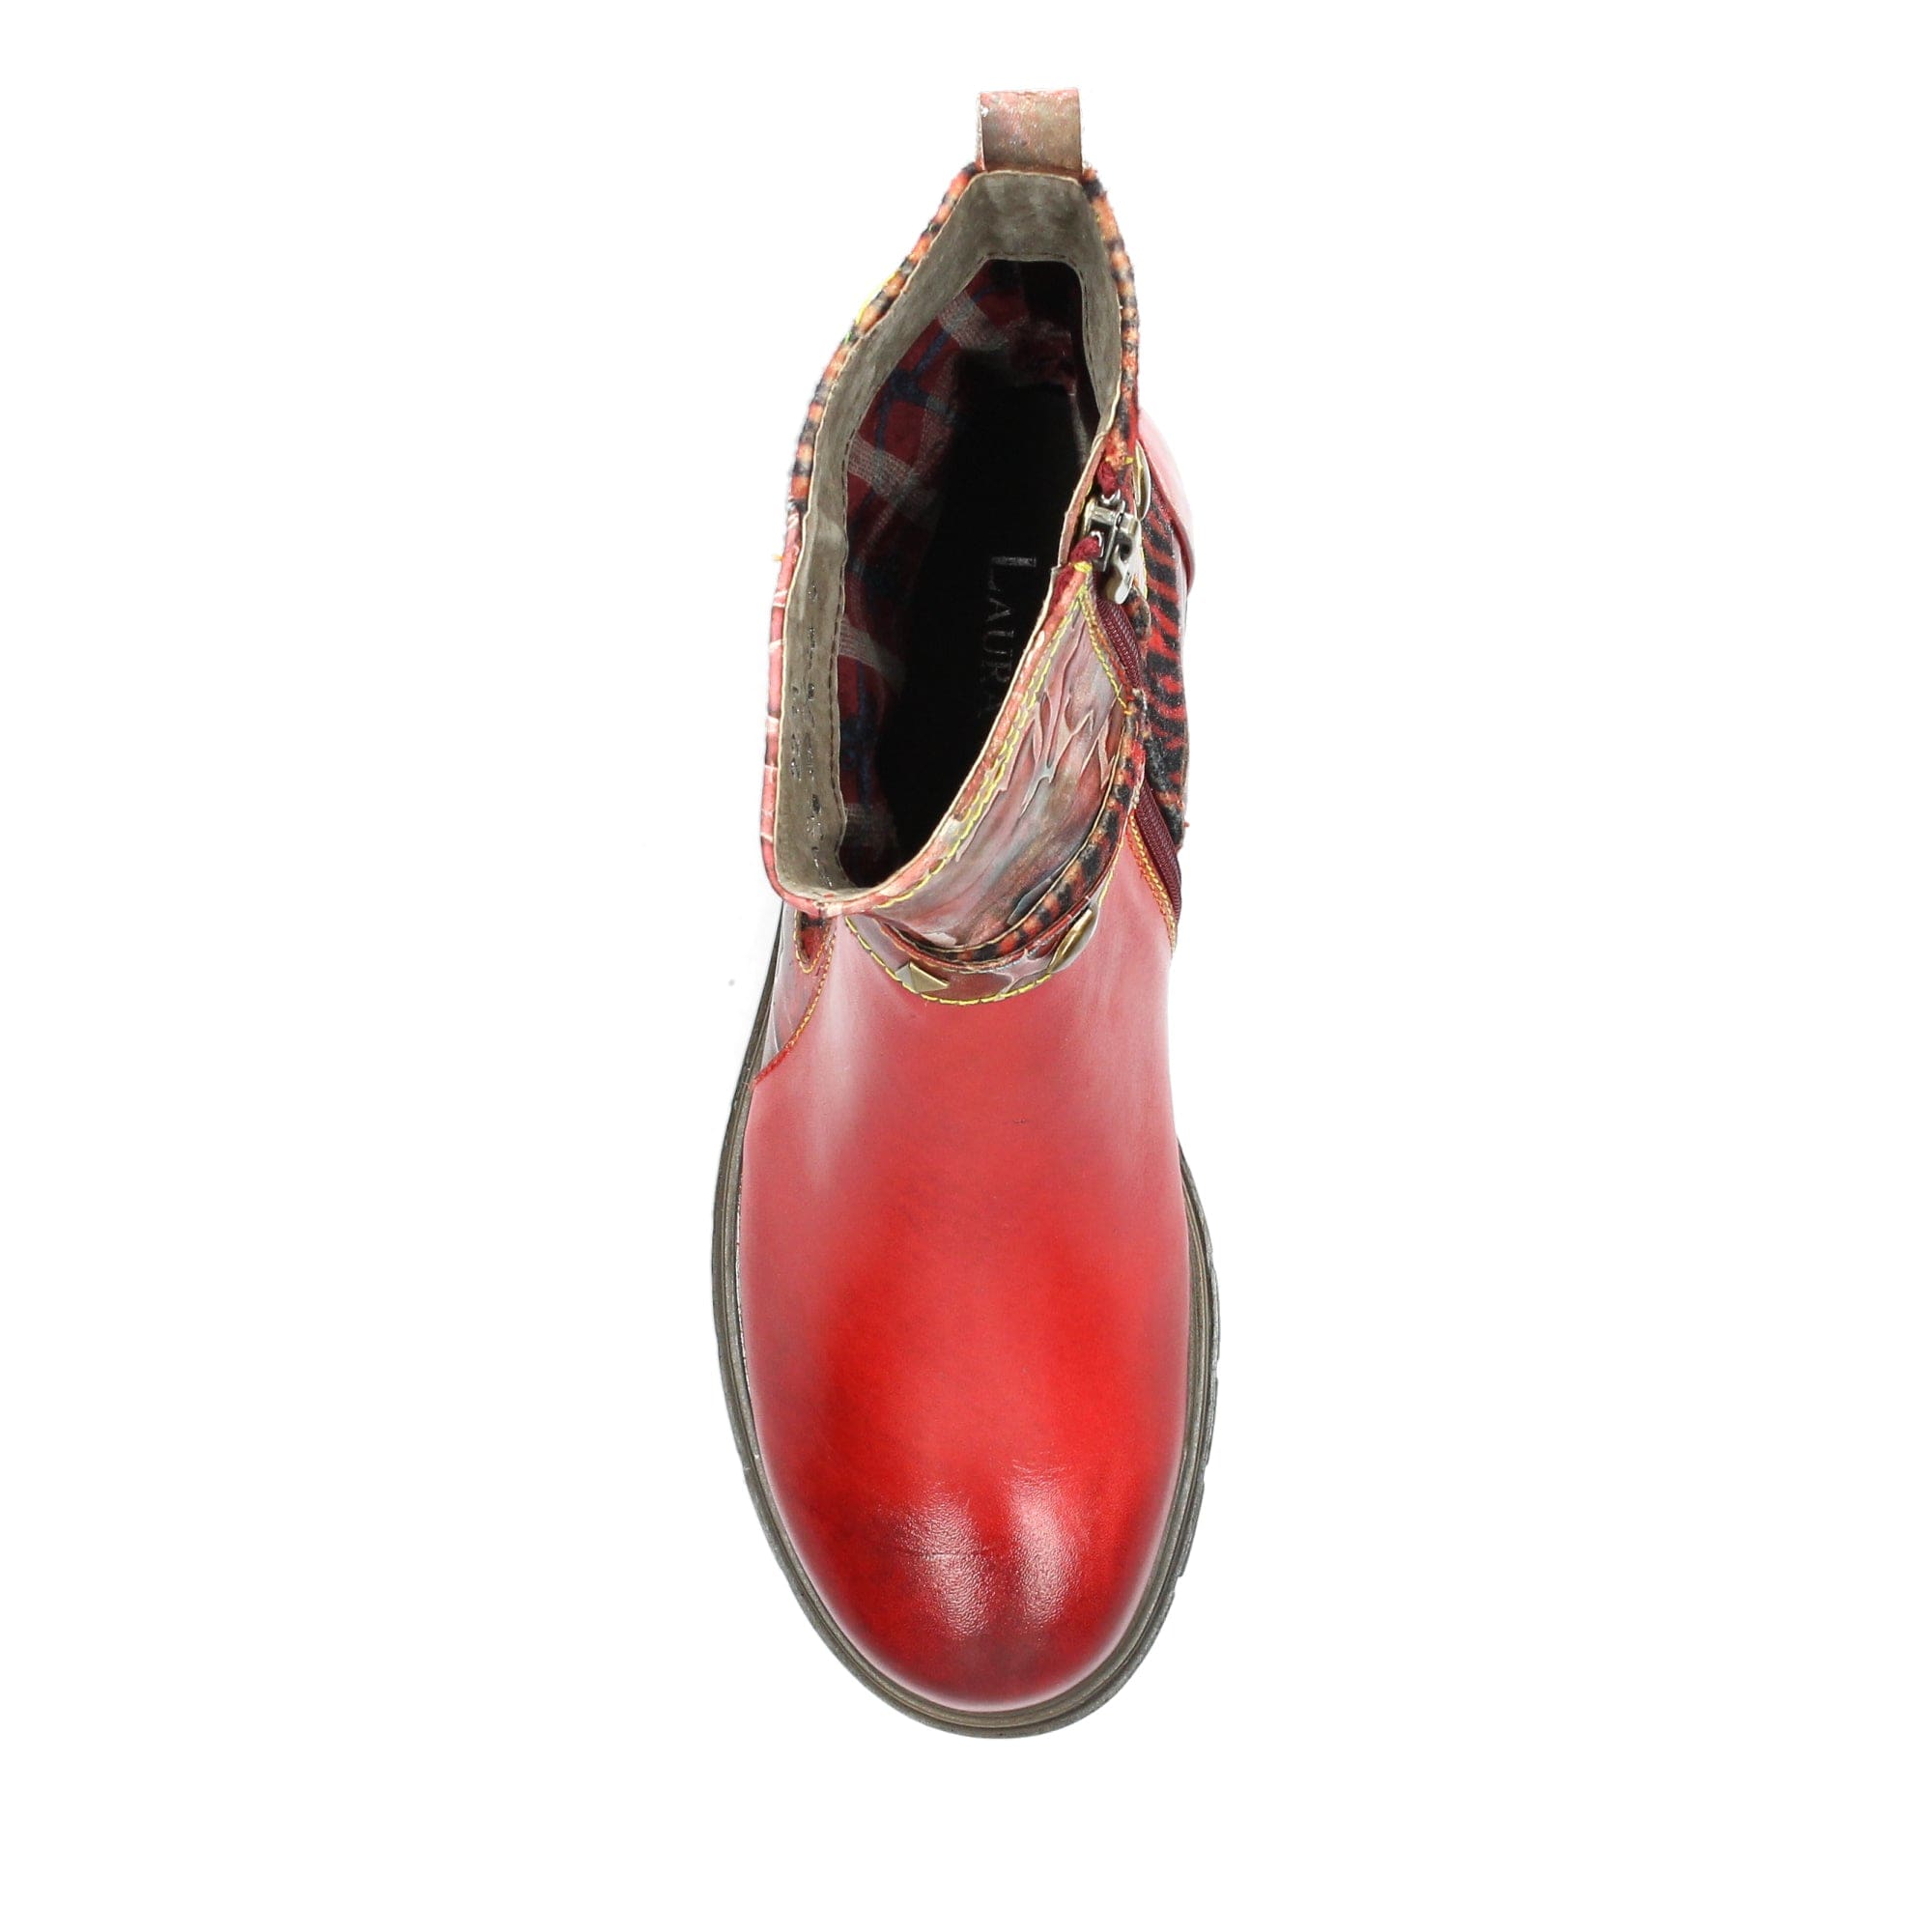 Shoe KAELAO 01 - Boots